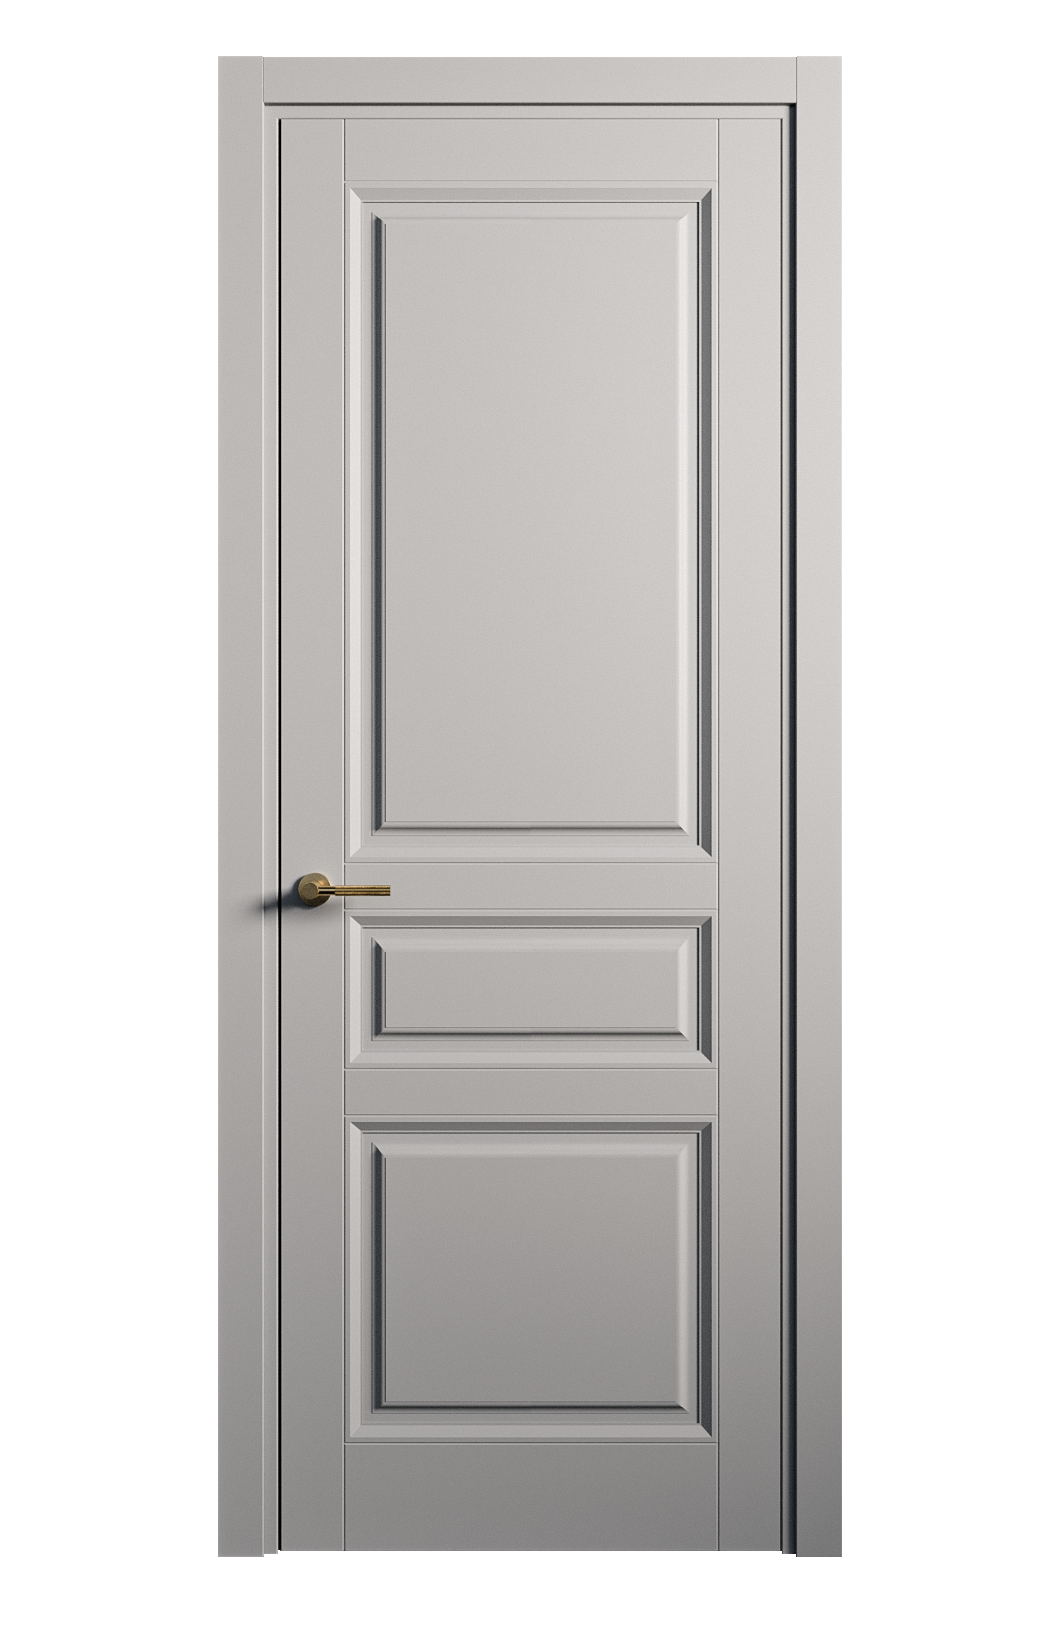 Межкомнатная дверь Venezia-2 глухая эмаль ral 7040 25706